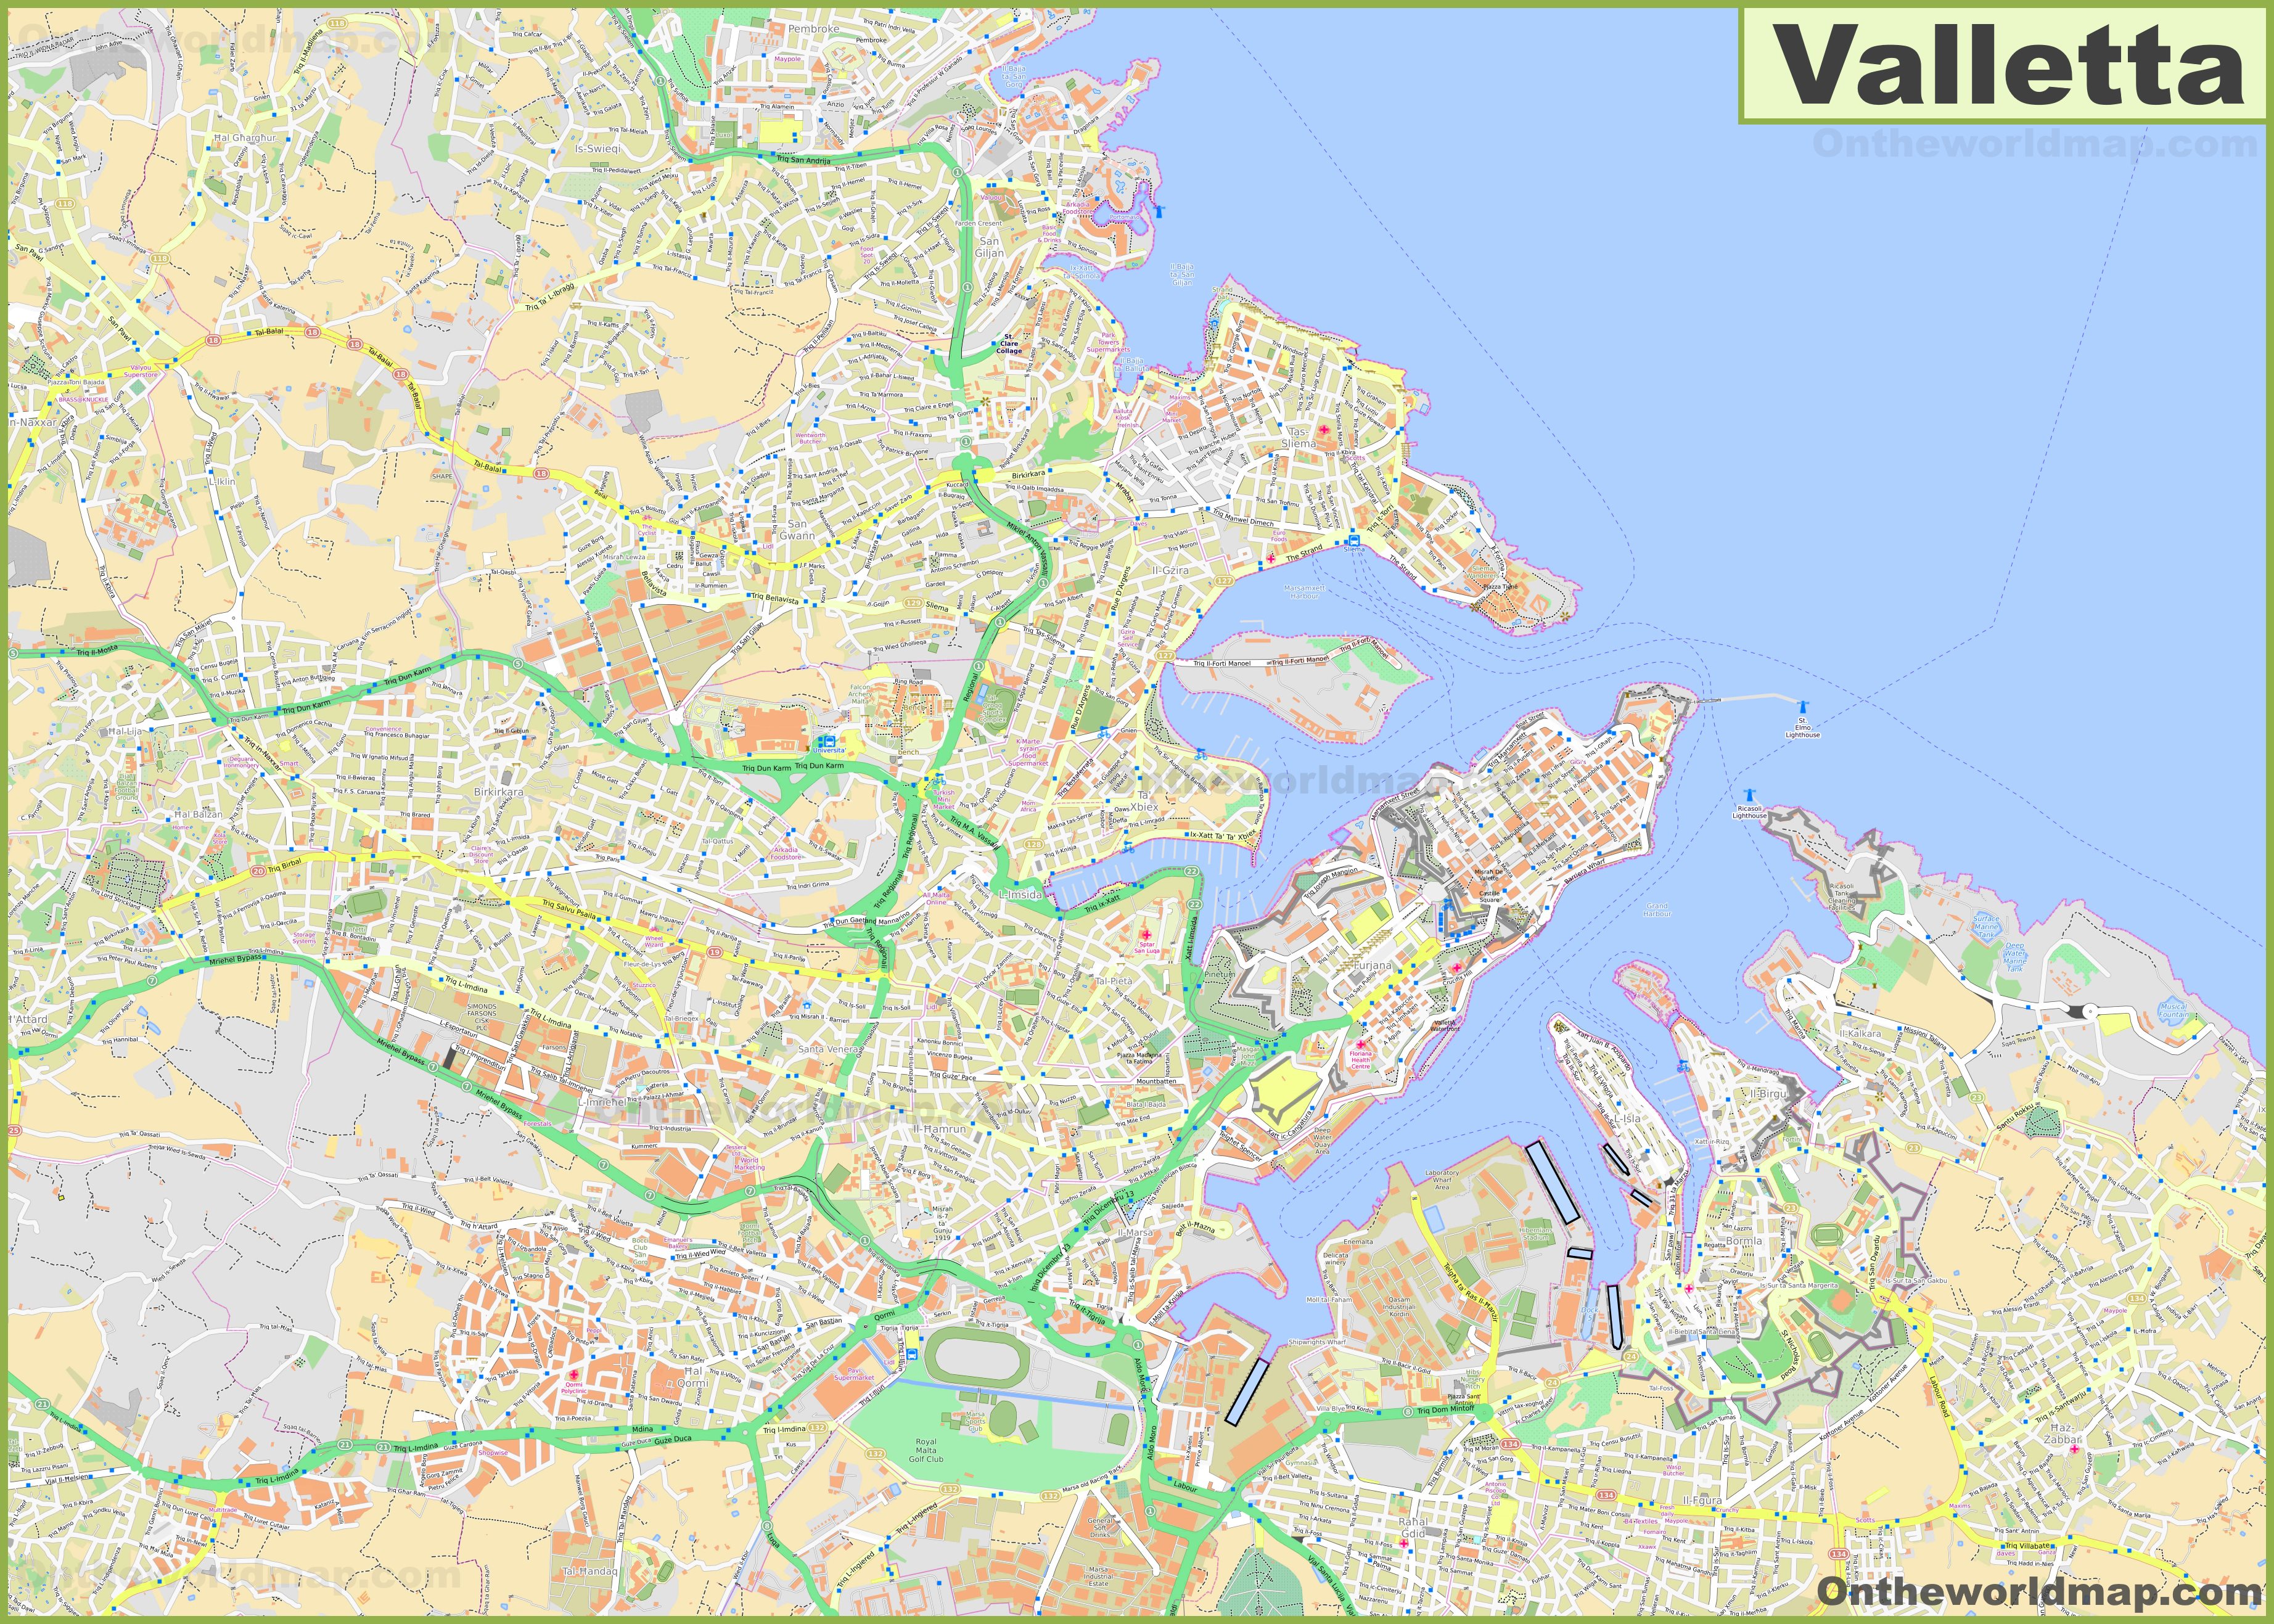 detailed-map-of-surroundings-of-valletta.jpg